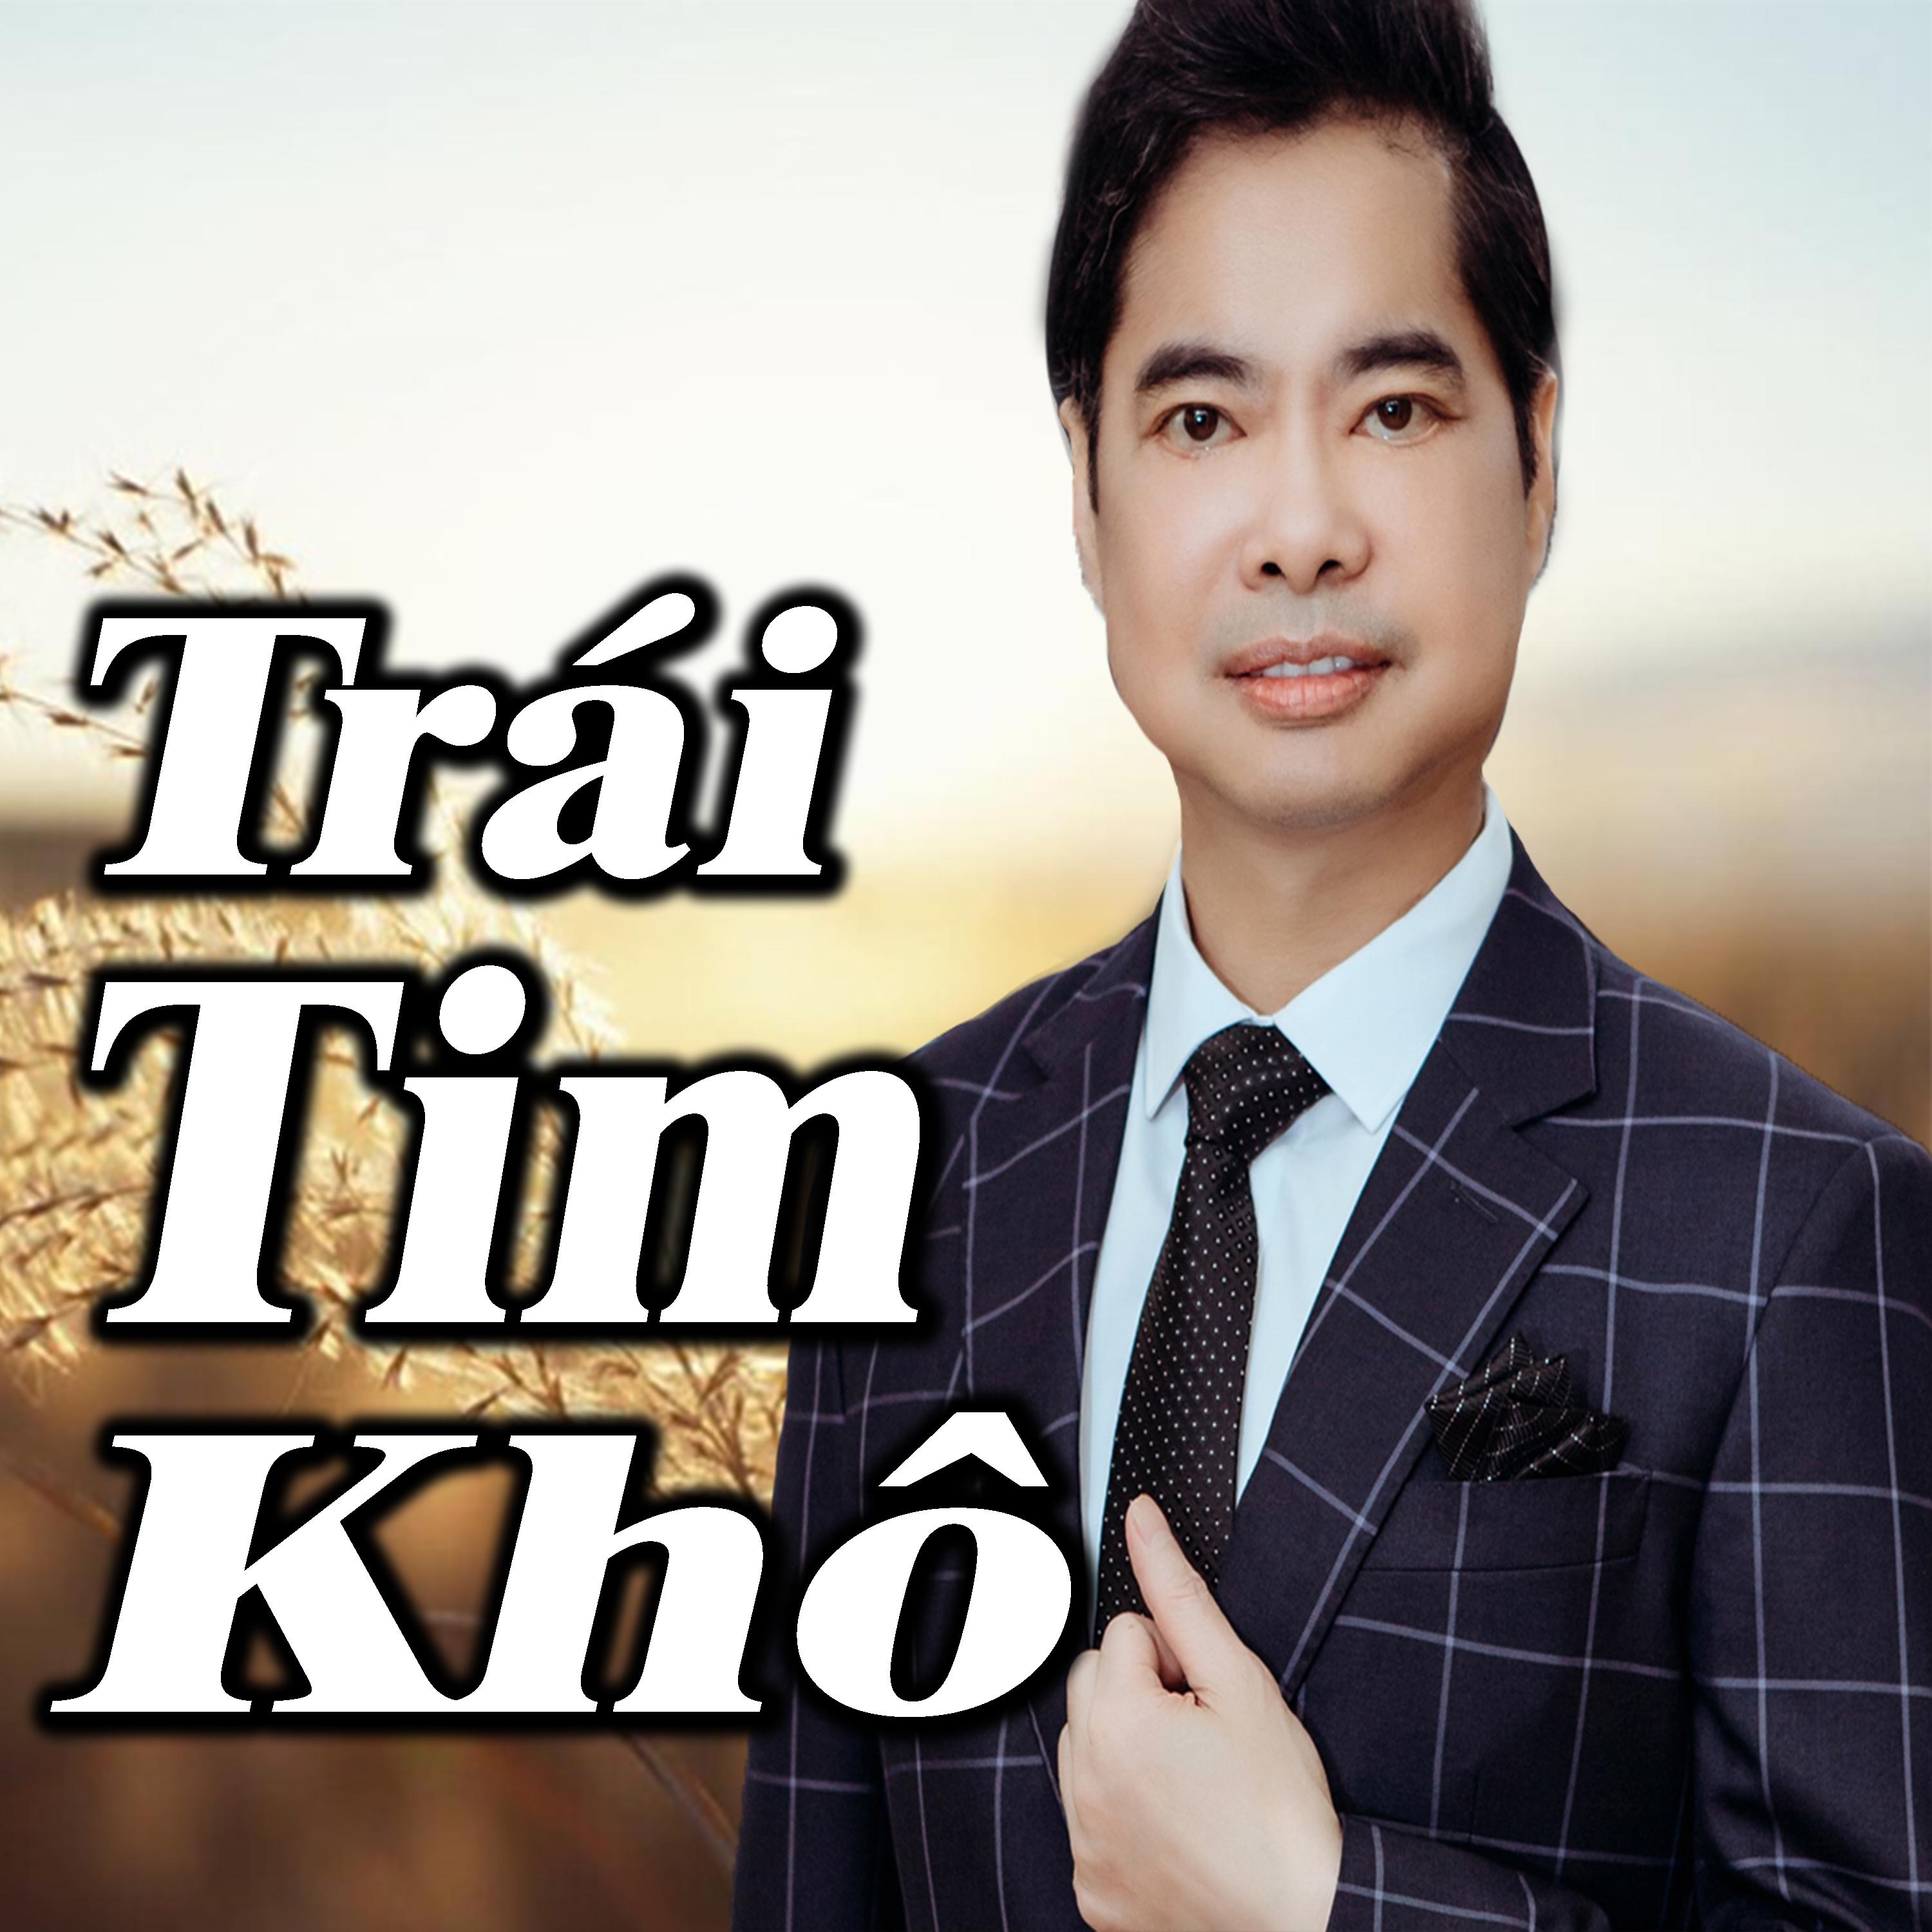 Tra i Tim Kh